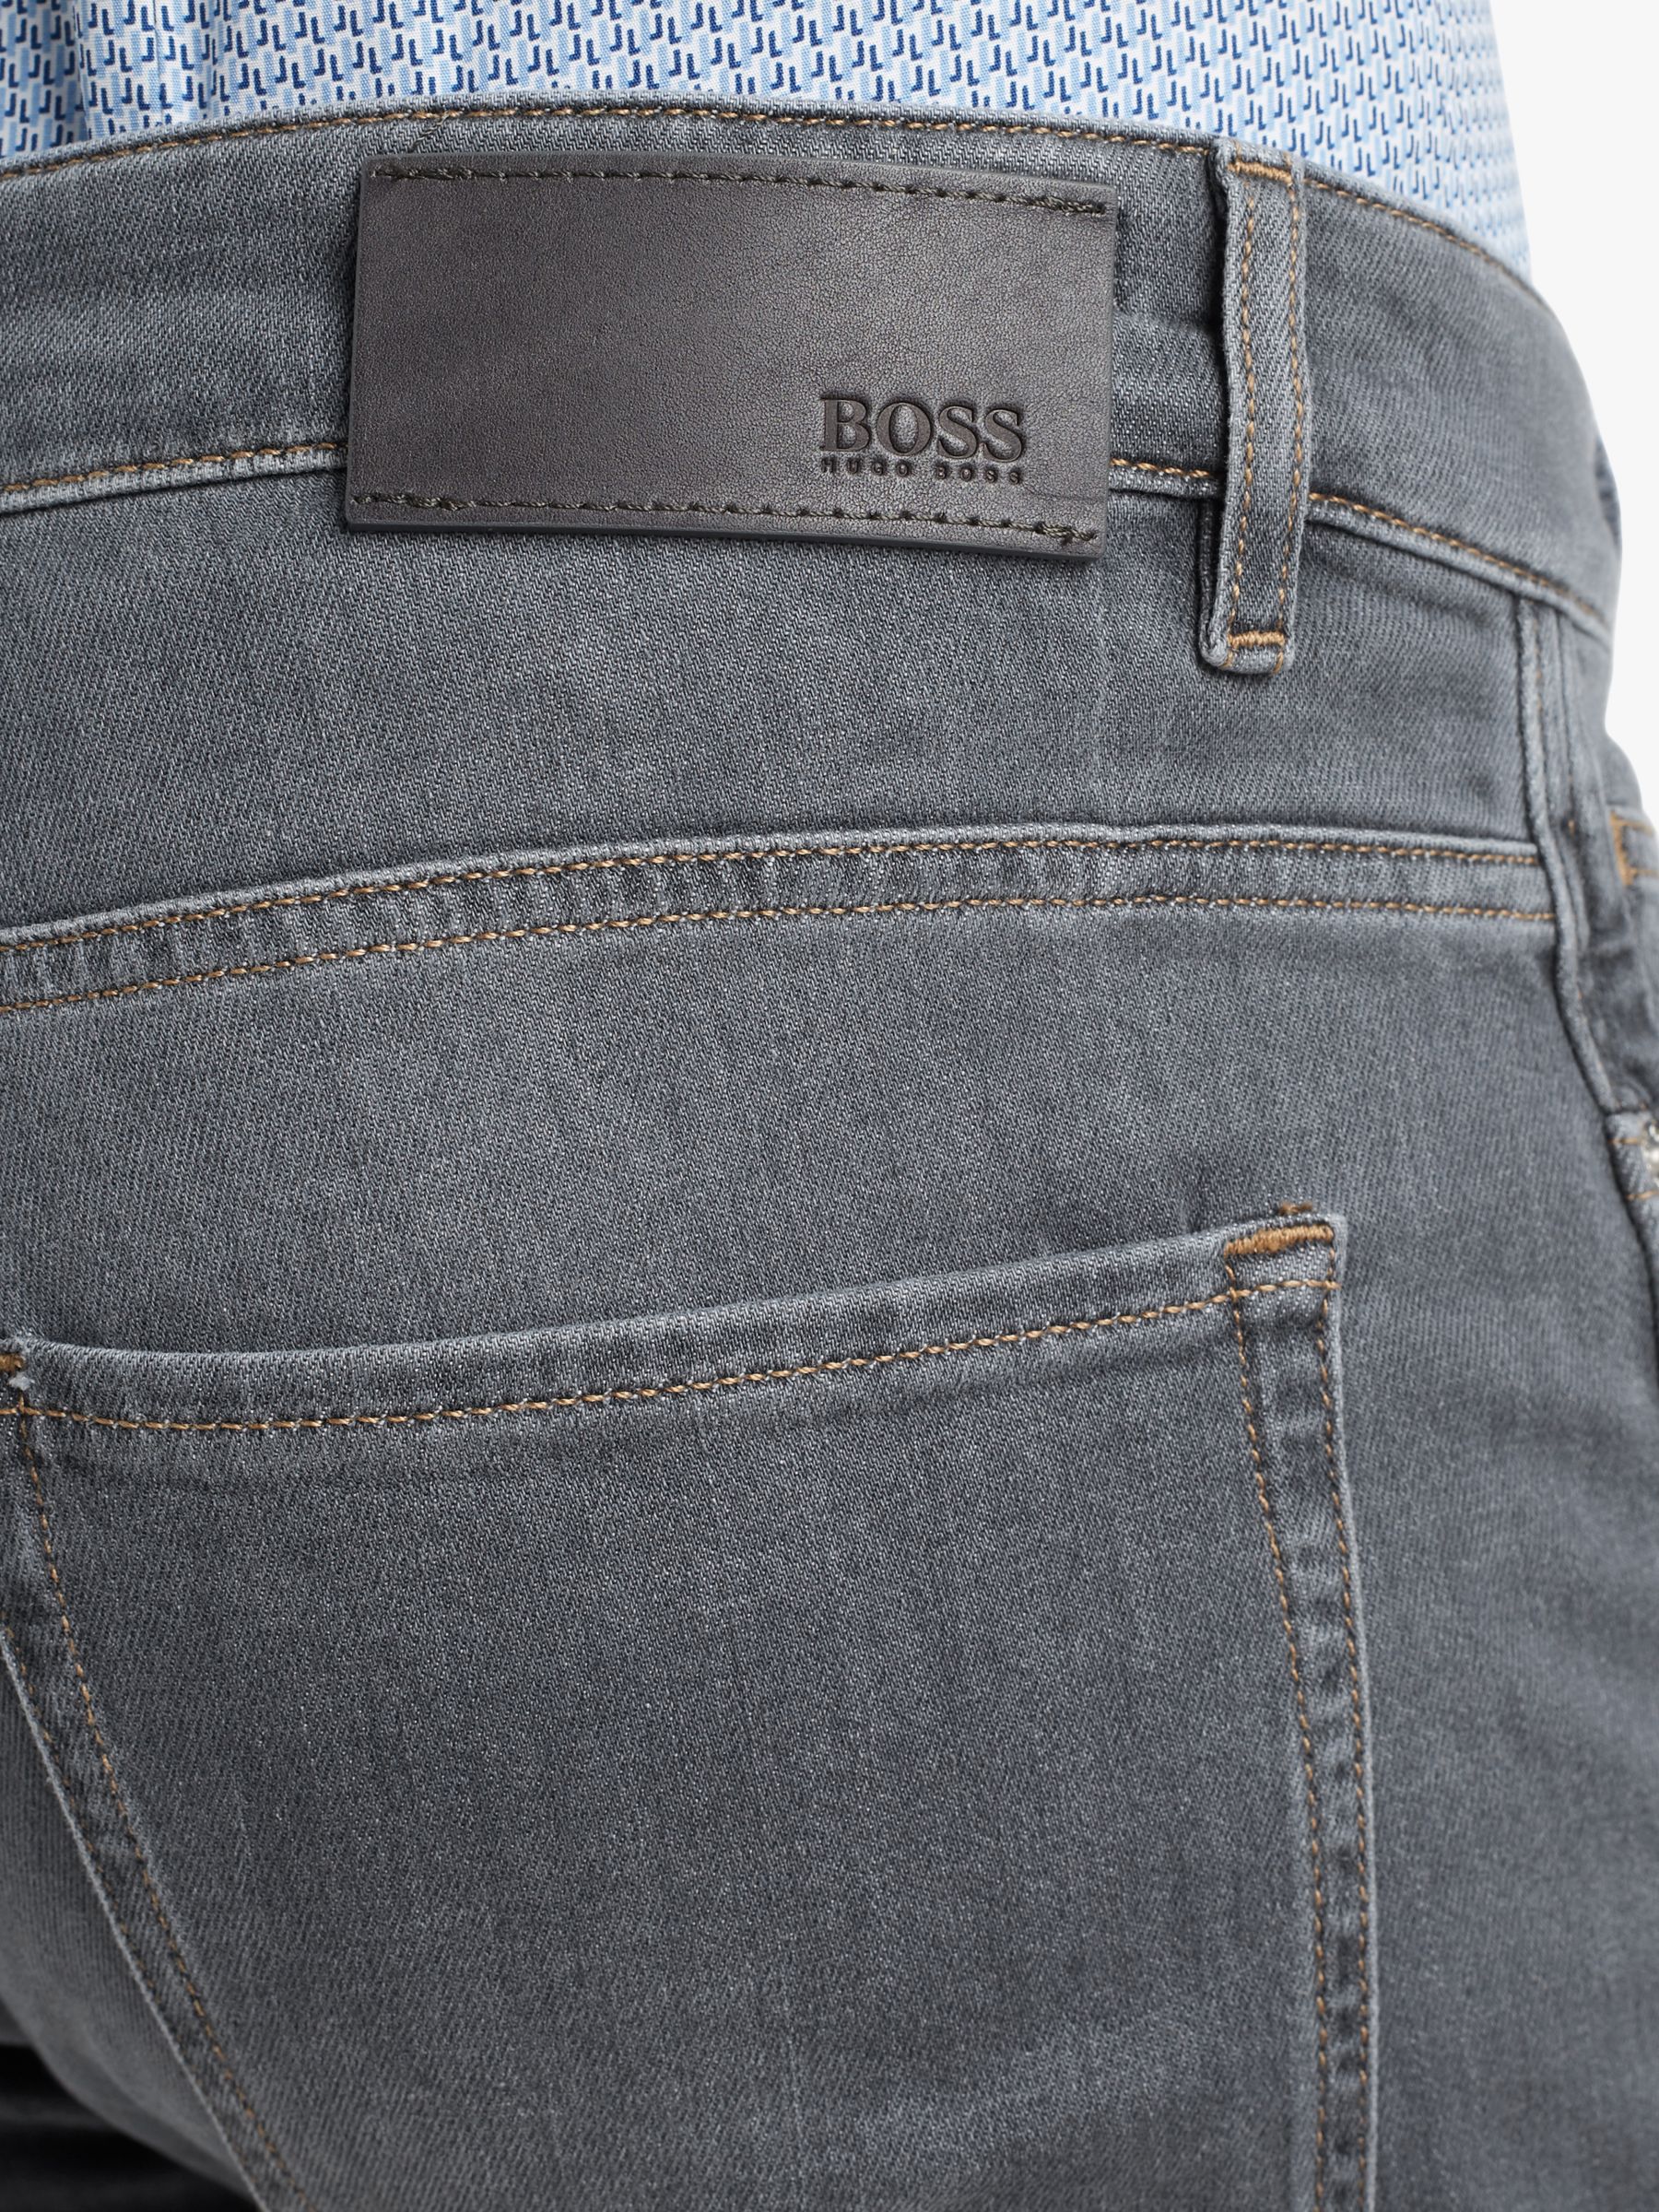 grey boss jeans